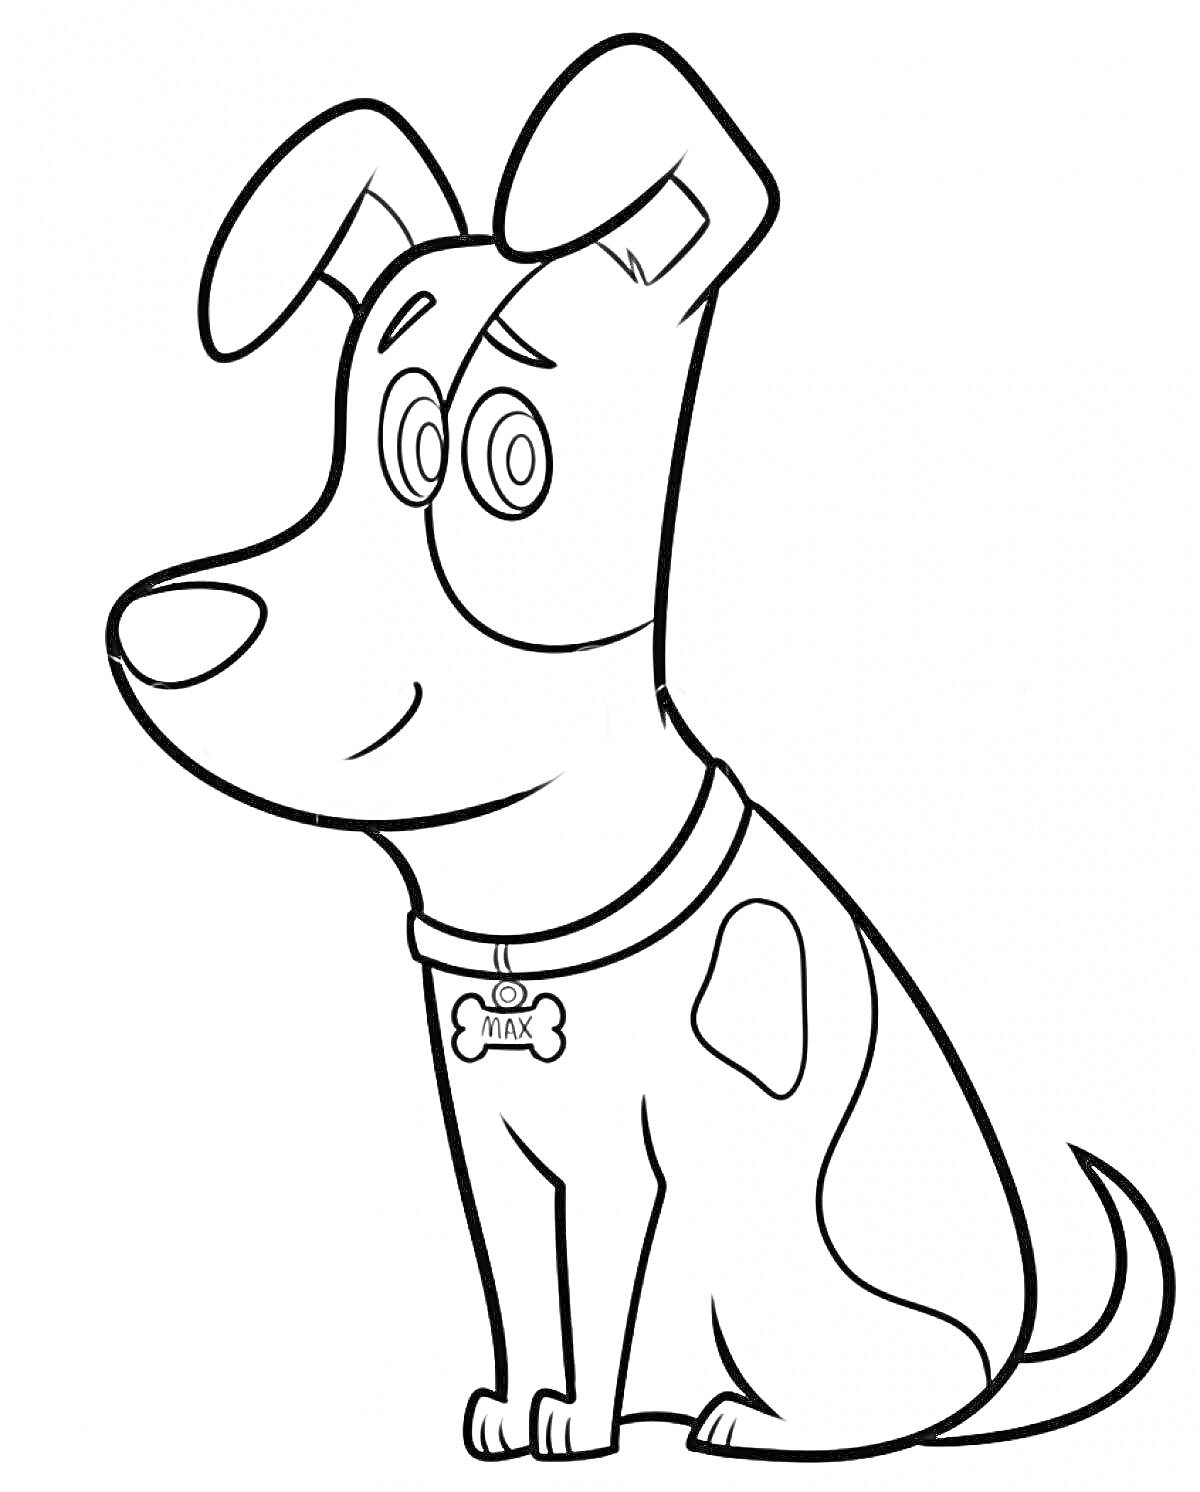 Раскраска Собака Макс из мультфильма 